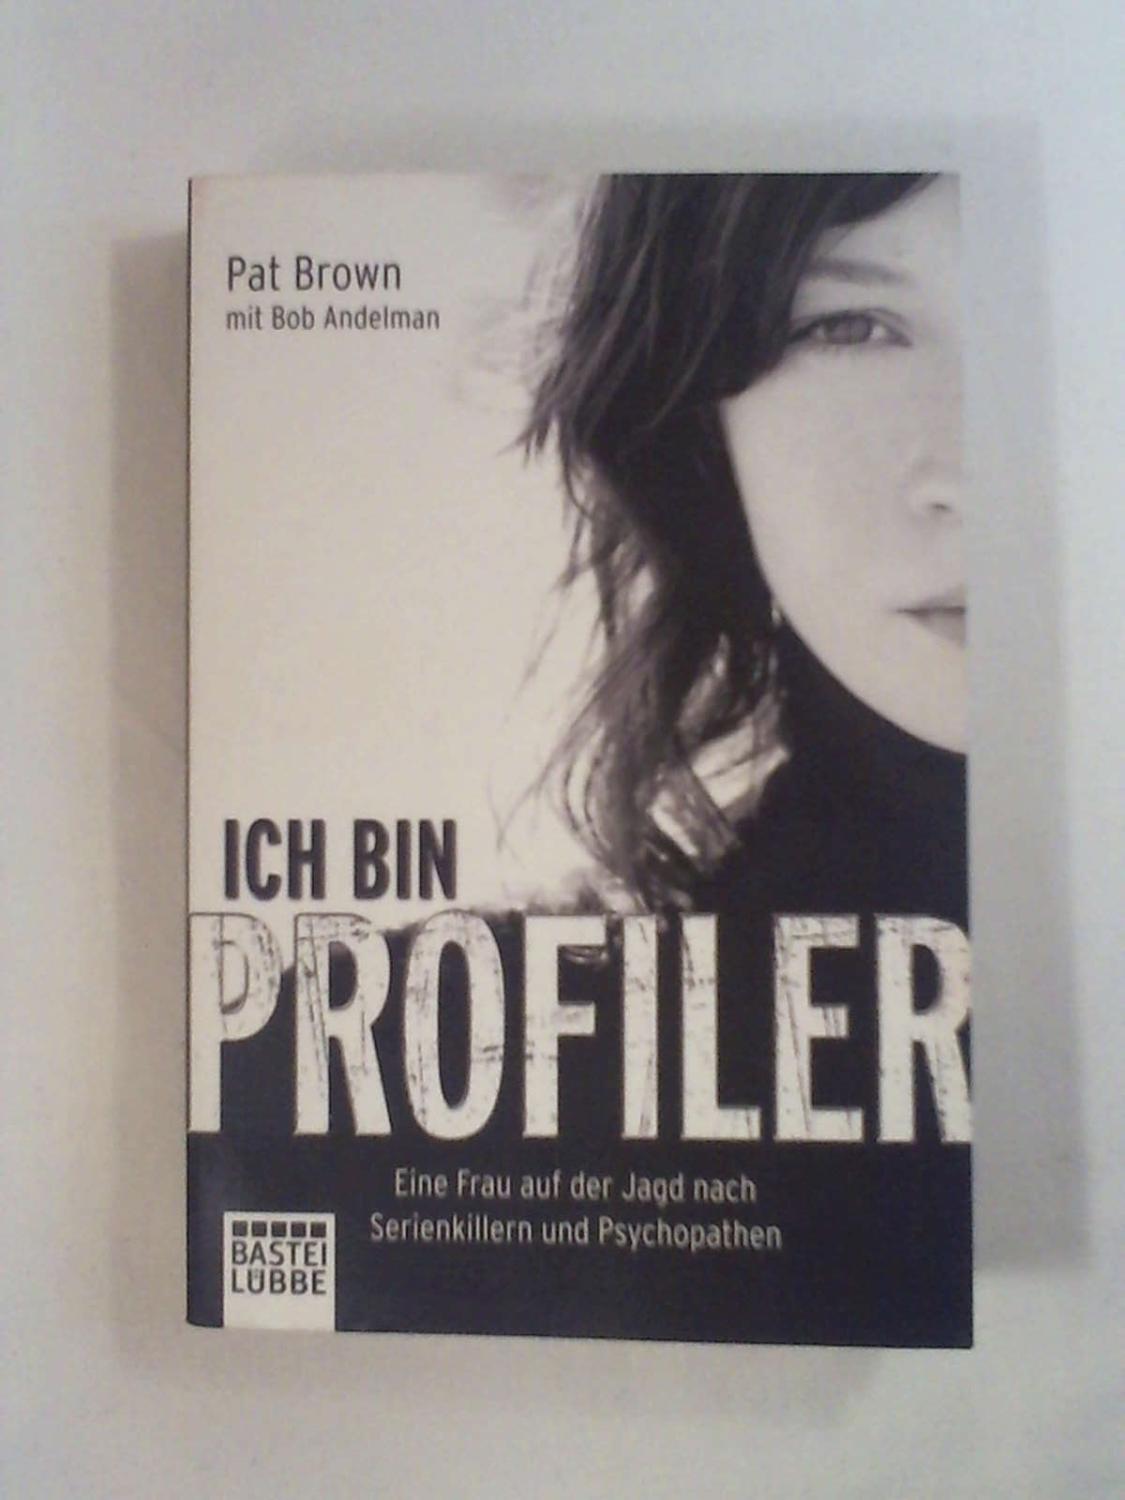 Ich bin Profiler: Eine Frau auf der Jagd nach Serienkillern und Psychopathen - Pat Brown - Bob Andelman